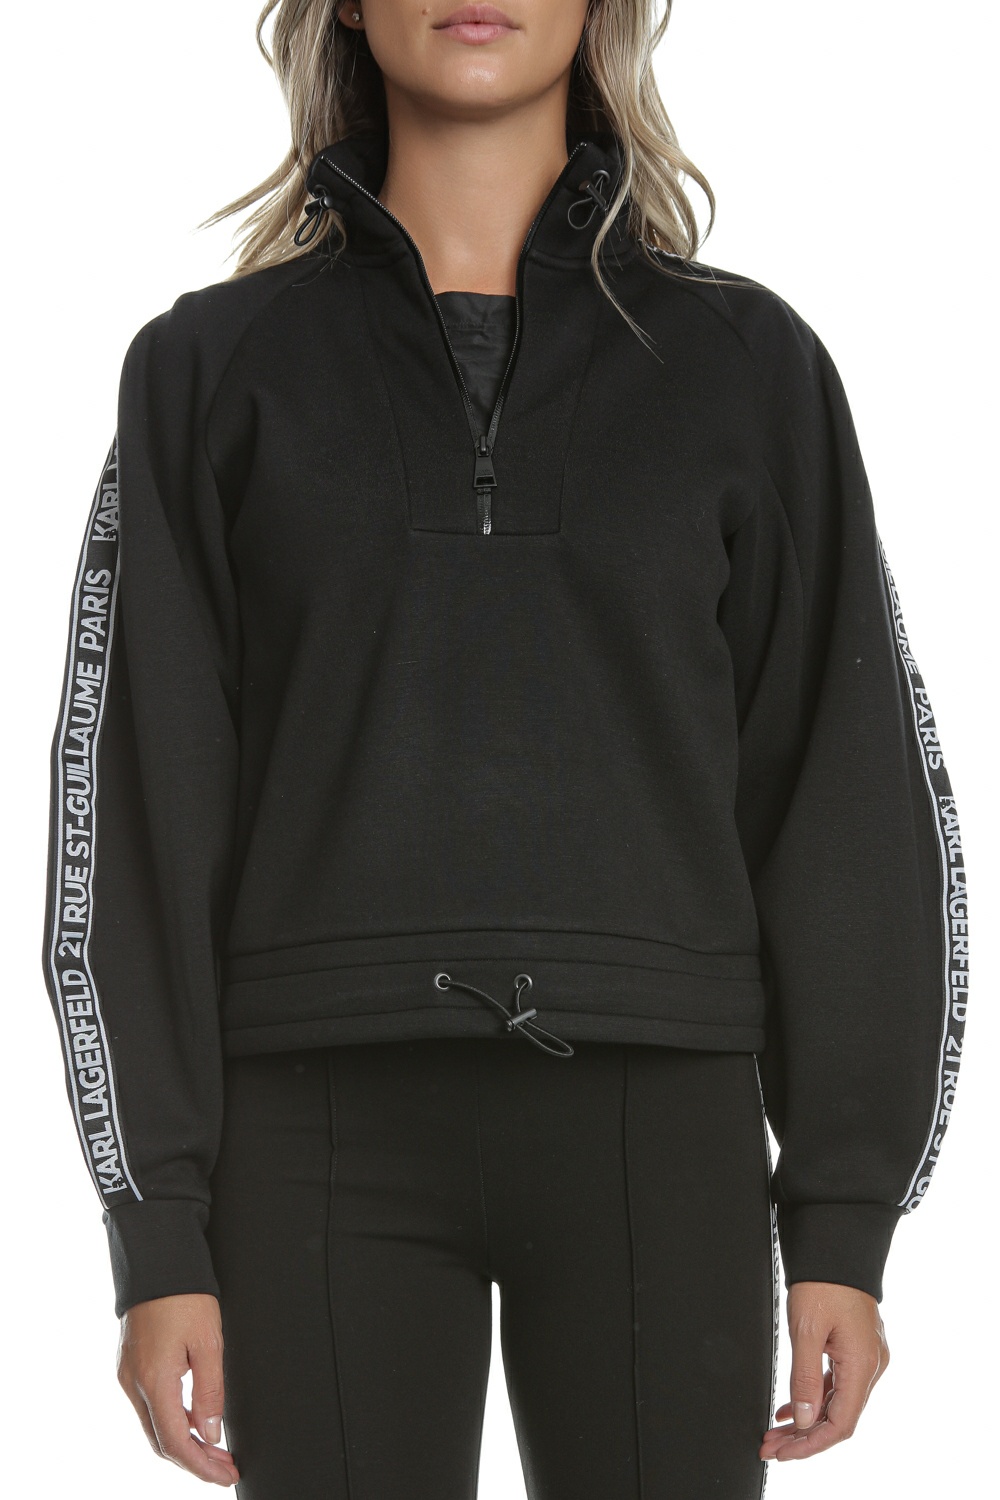 Γυναικεία/Ρούχα/Φούτερ/Μπλούζες KARL LAGERFELD - Γυναικεία cropped φούτερ μπλούζα KARL LAGERFELD Double Jersey μαύρη